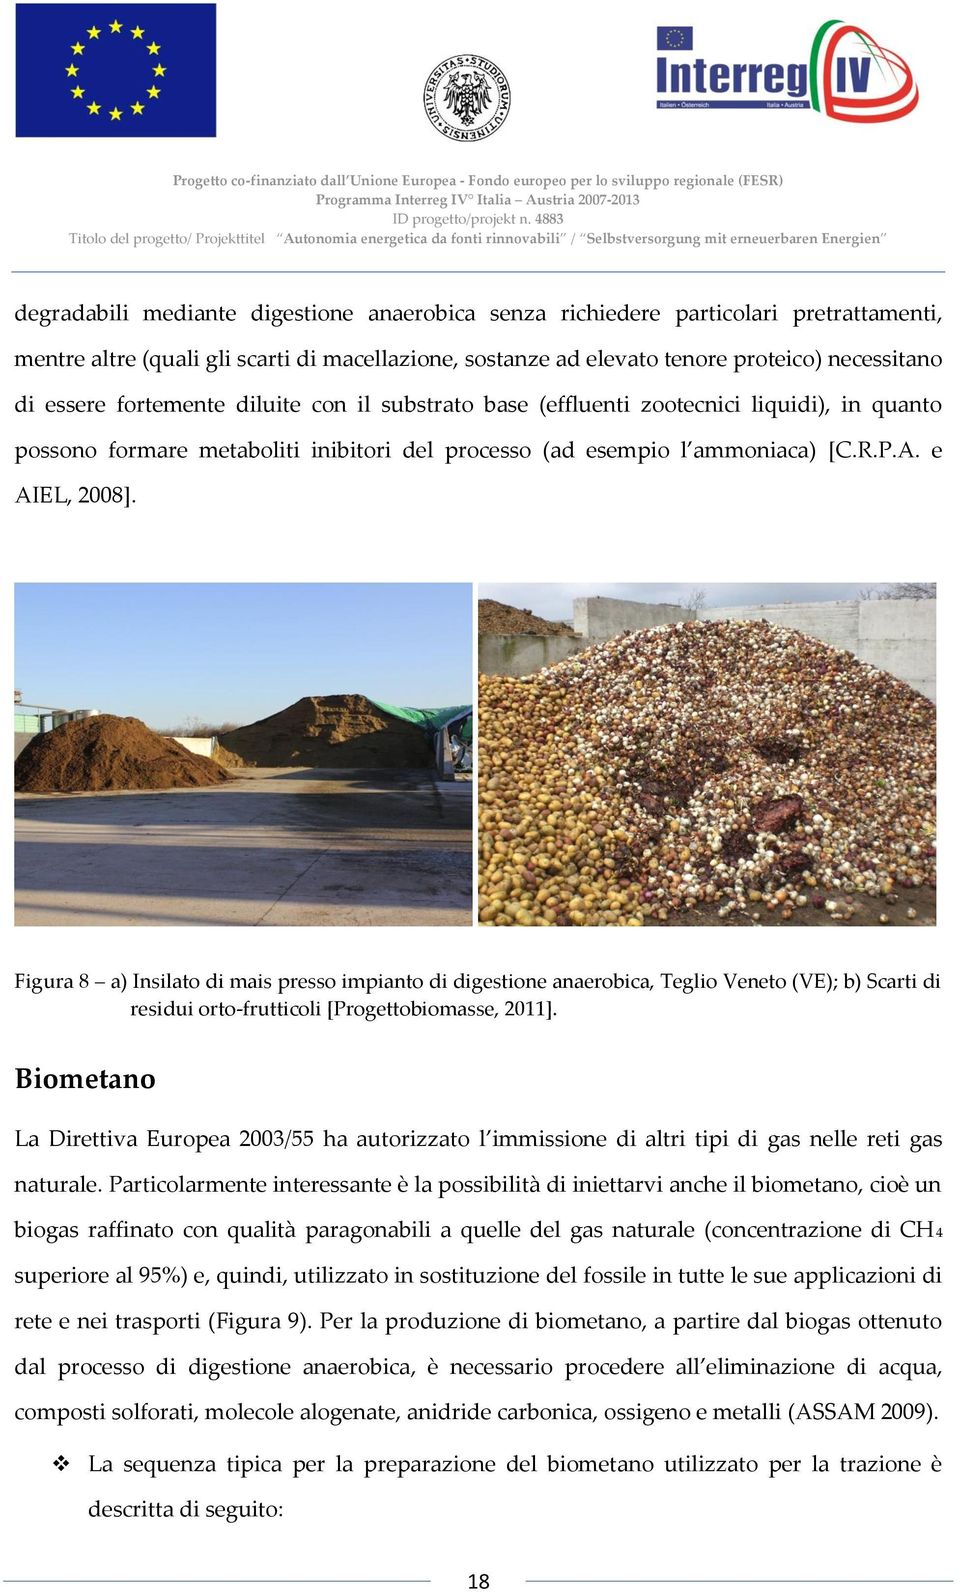 Figura 8 a) Insilato di mais presso impianto di digestione anaerobica, Teglio Veneto (VE); b) Scarti di residui orto-frutticoli [Progettobiomasse, 2011].